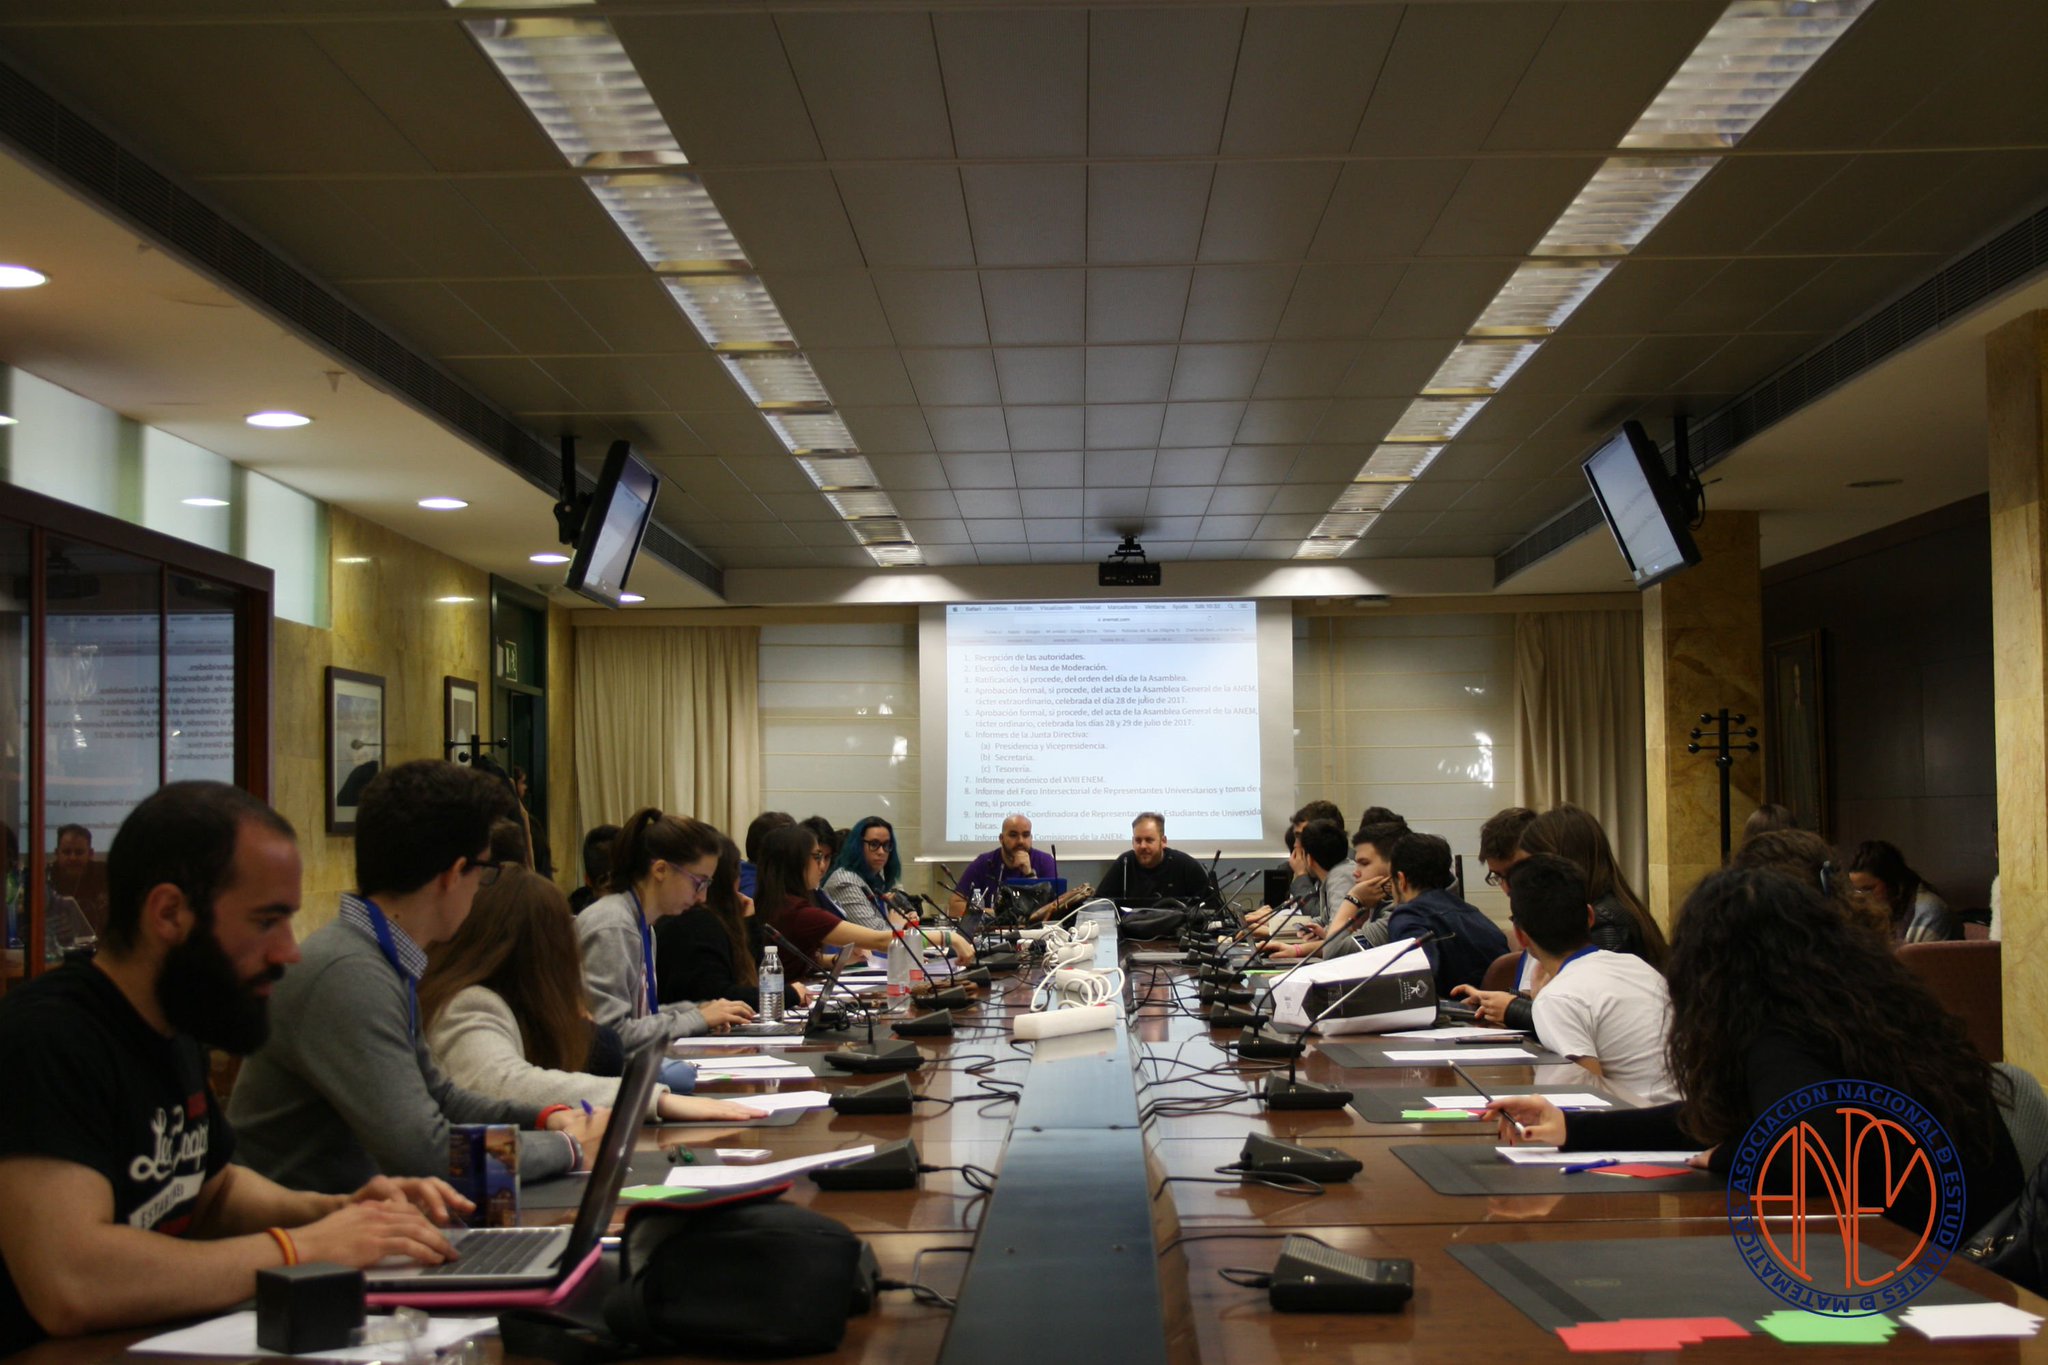 Fotografía de los asistentes a la Asamblea General de la ANEM de Almería en febrero de 2018, reunidos alrededor de una mesa